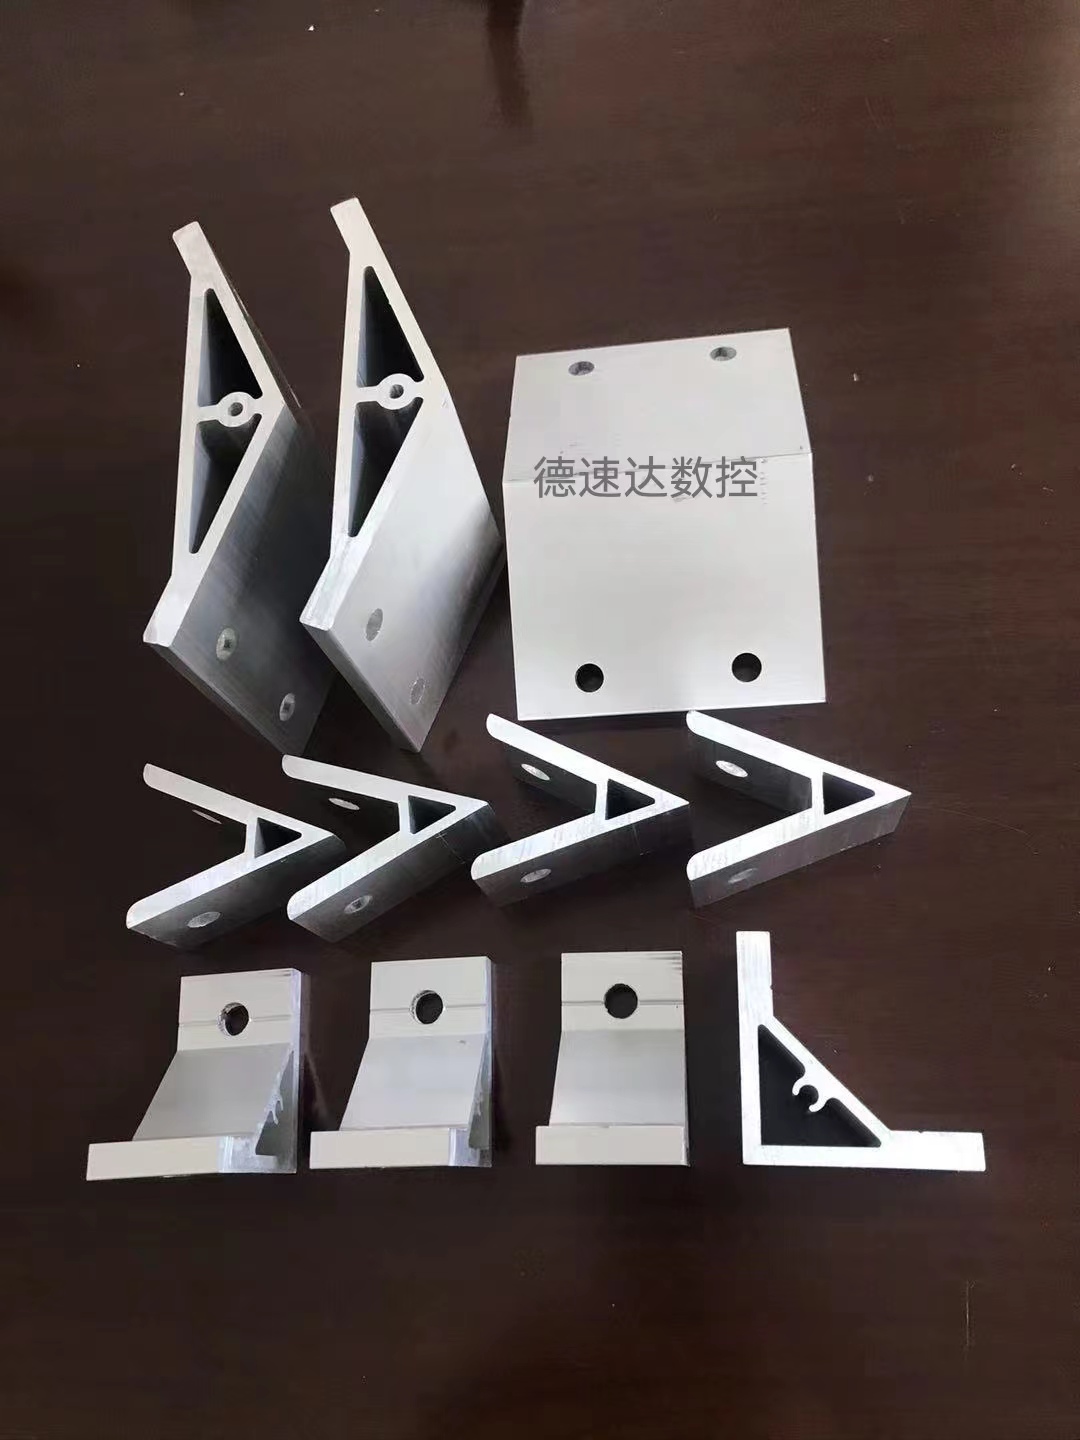 上海自動鋁切機設備廠家